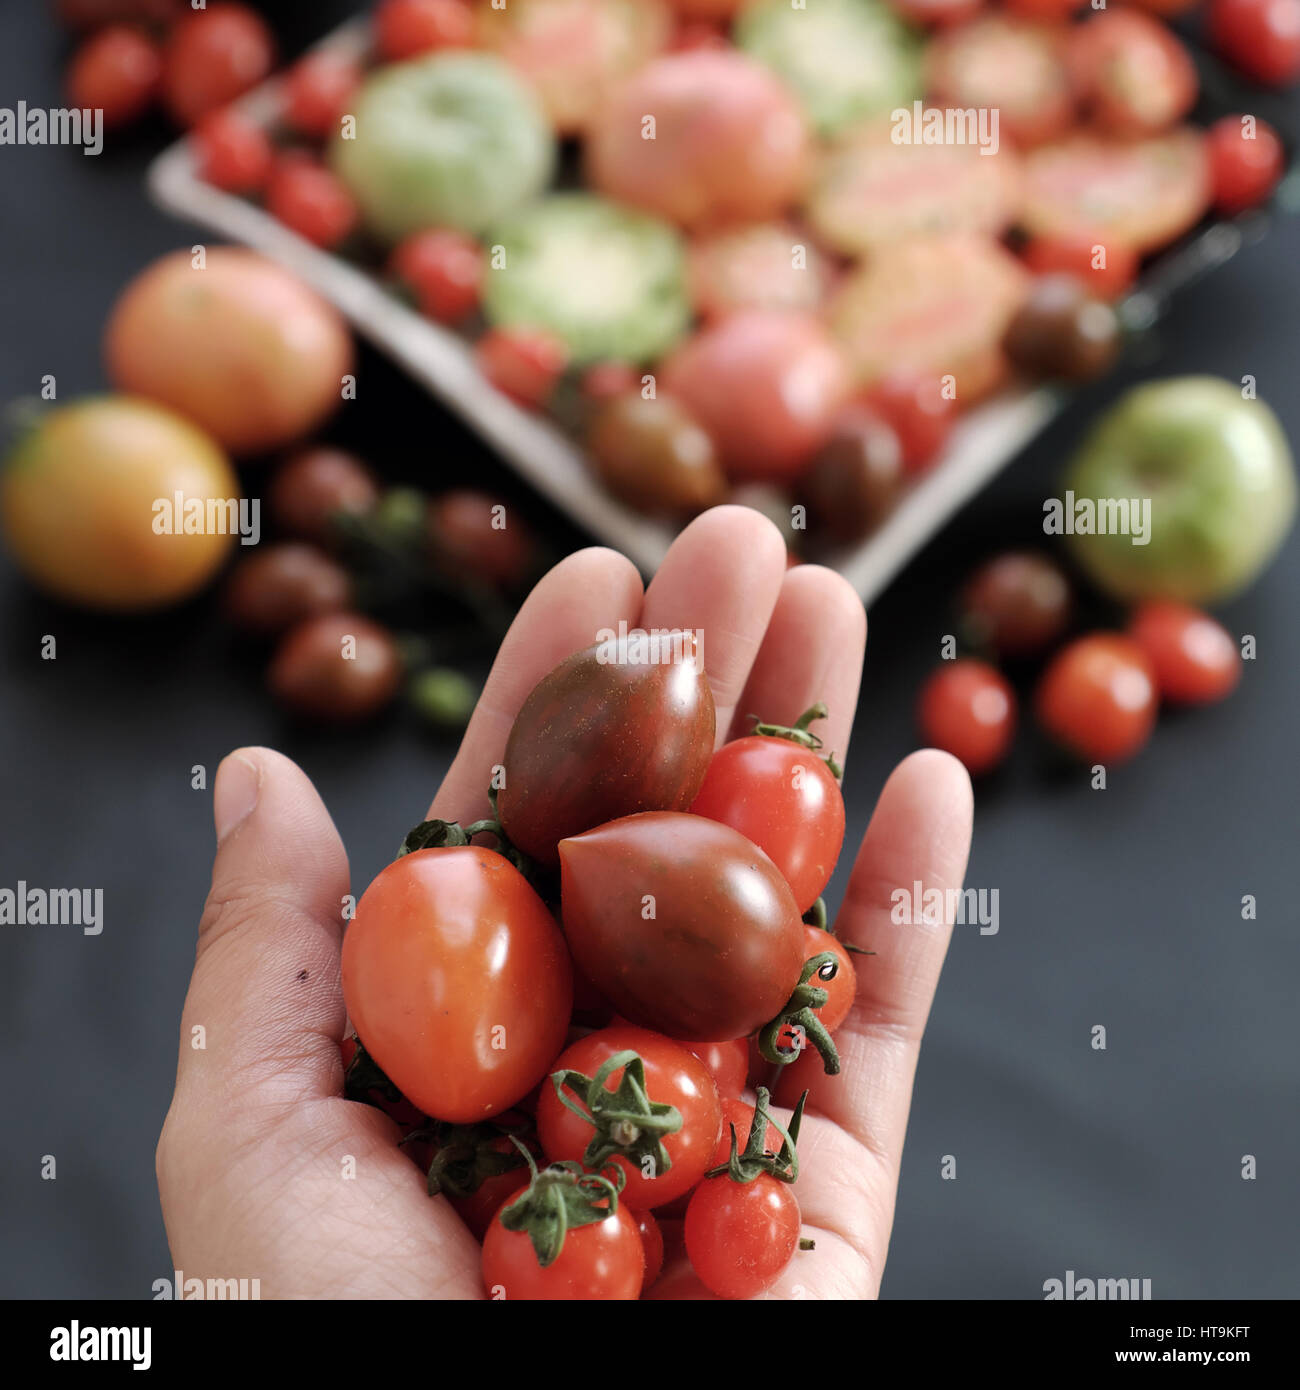 Les tomates, la nourriture bon marché avec beaucoup d'utiliser à titre d'antioxydants, soins de la peau, anticancéreux, bon pour les personnes alzheimer, légumes riches en vitamines, caroténoïdes, le lycopène Banque D'Images